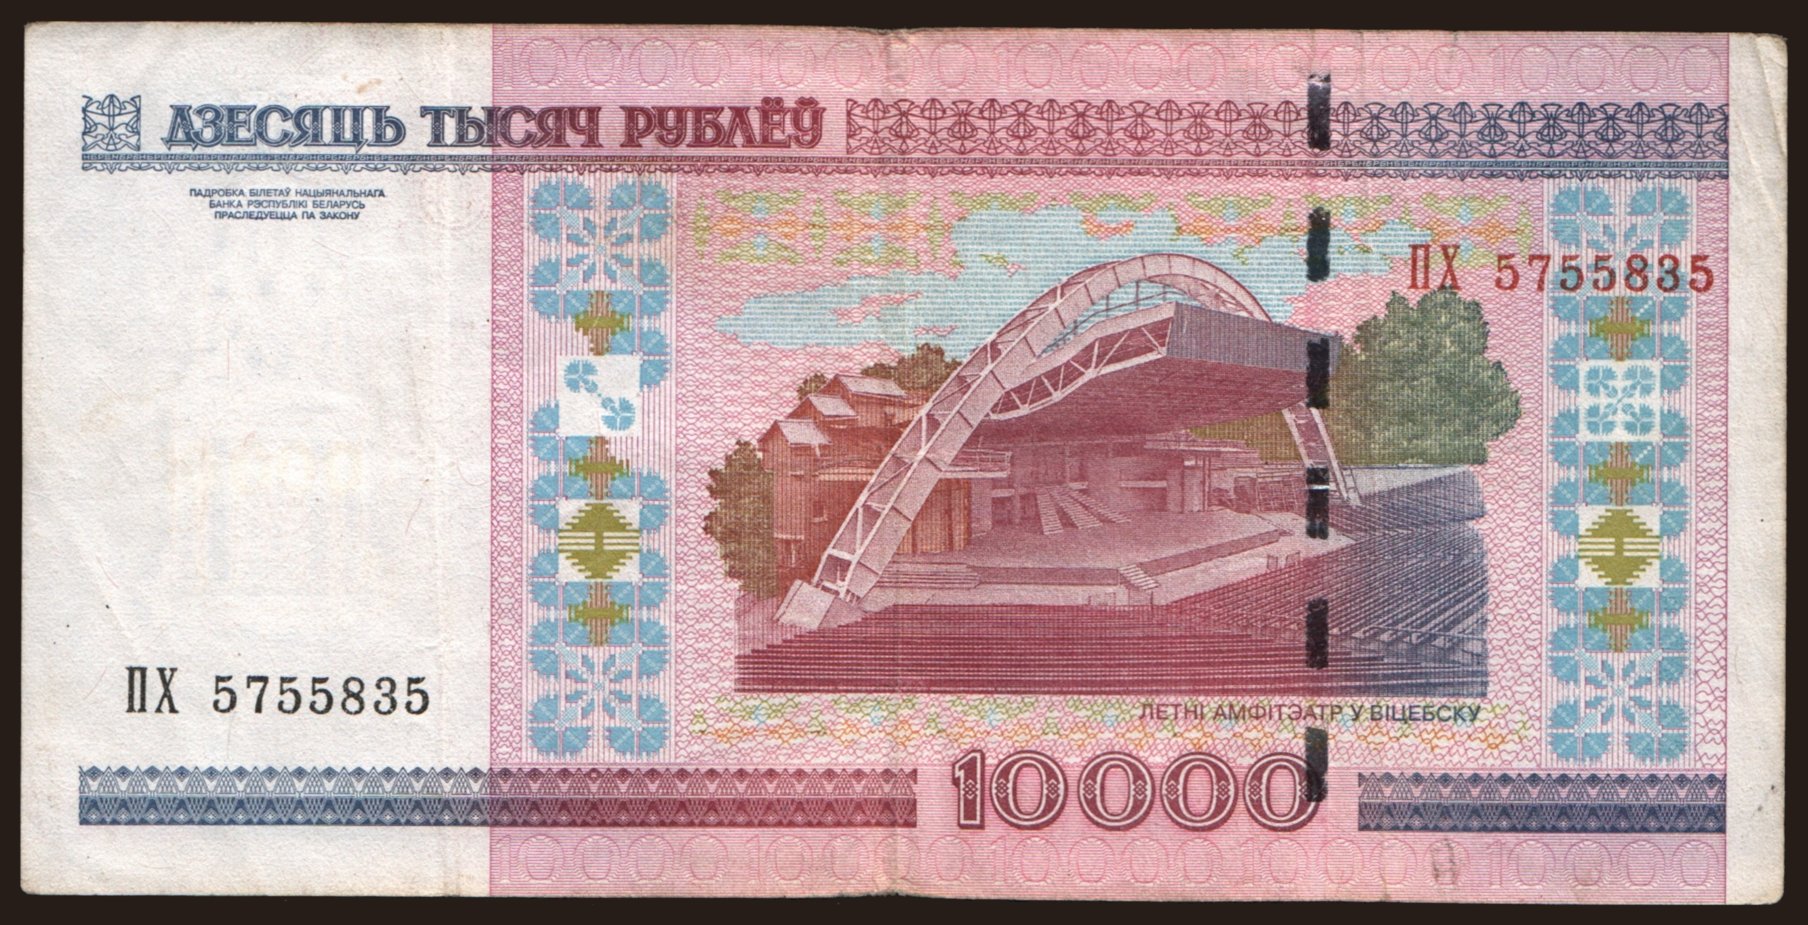 10.000 rublei, 2011